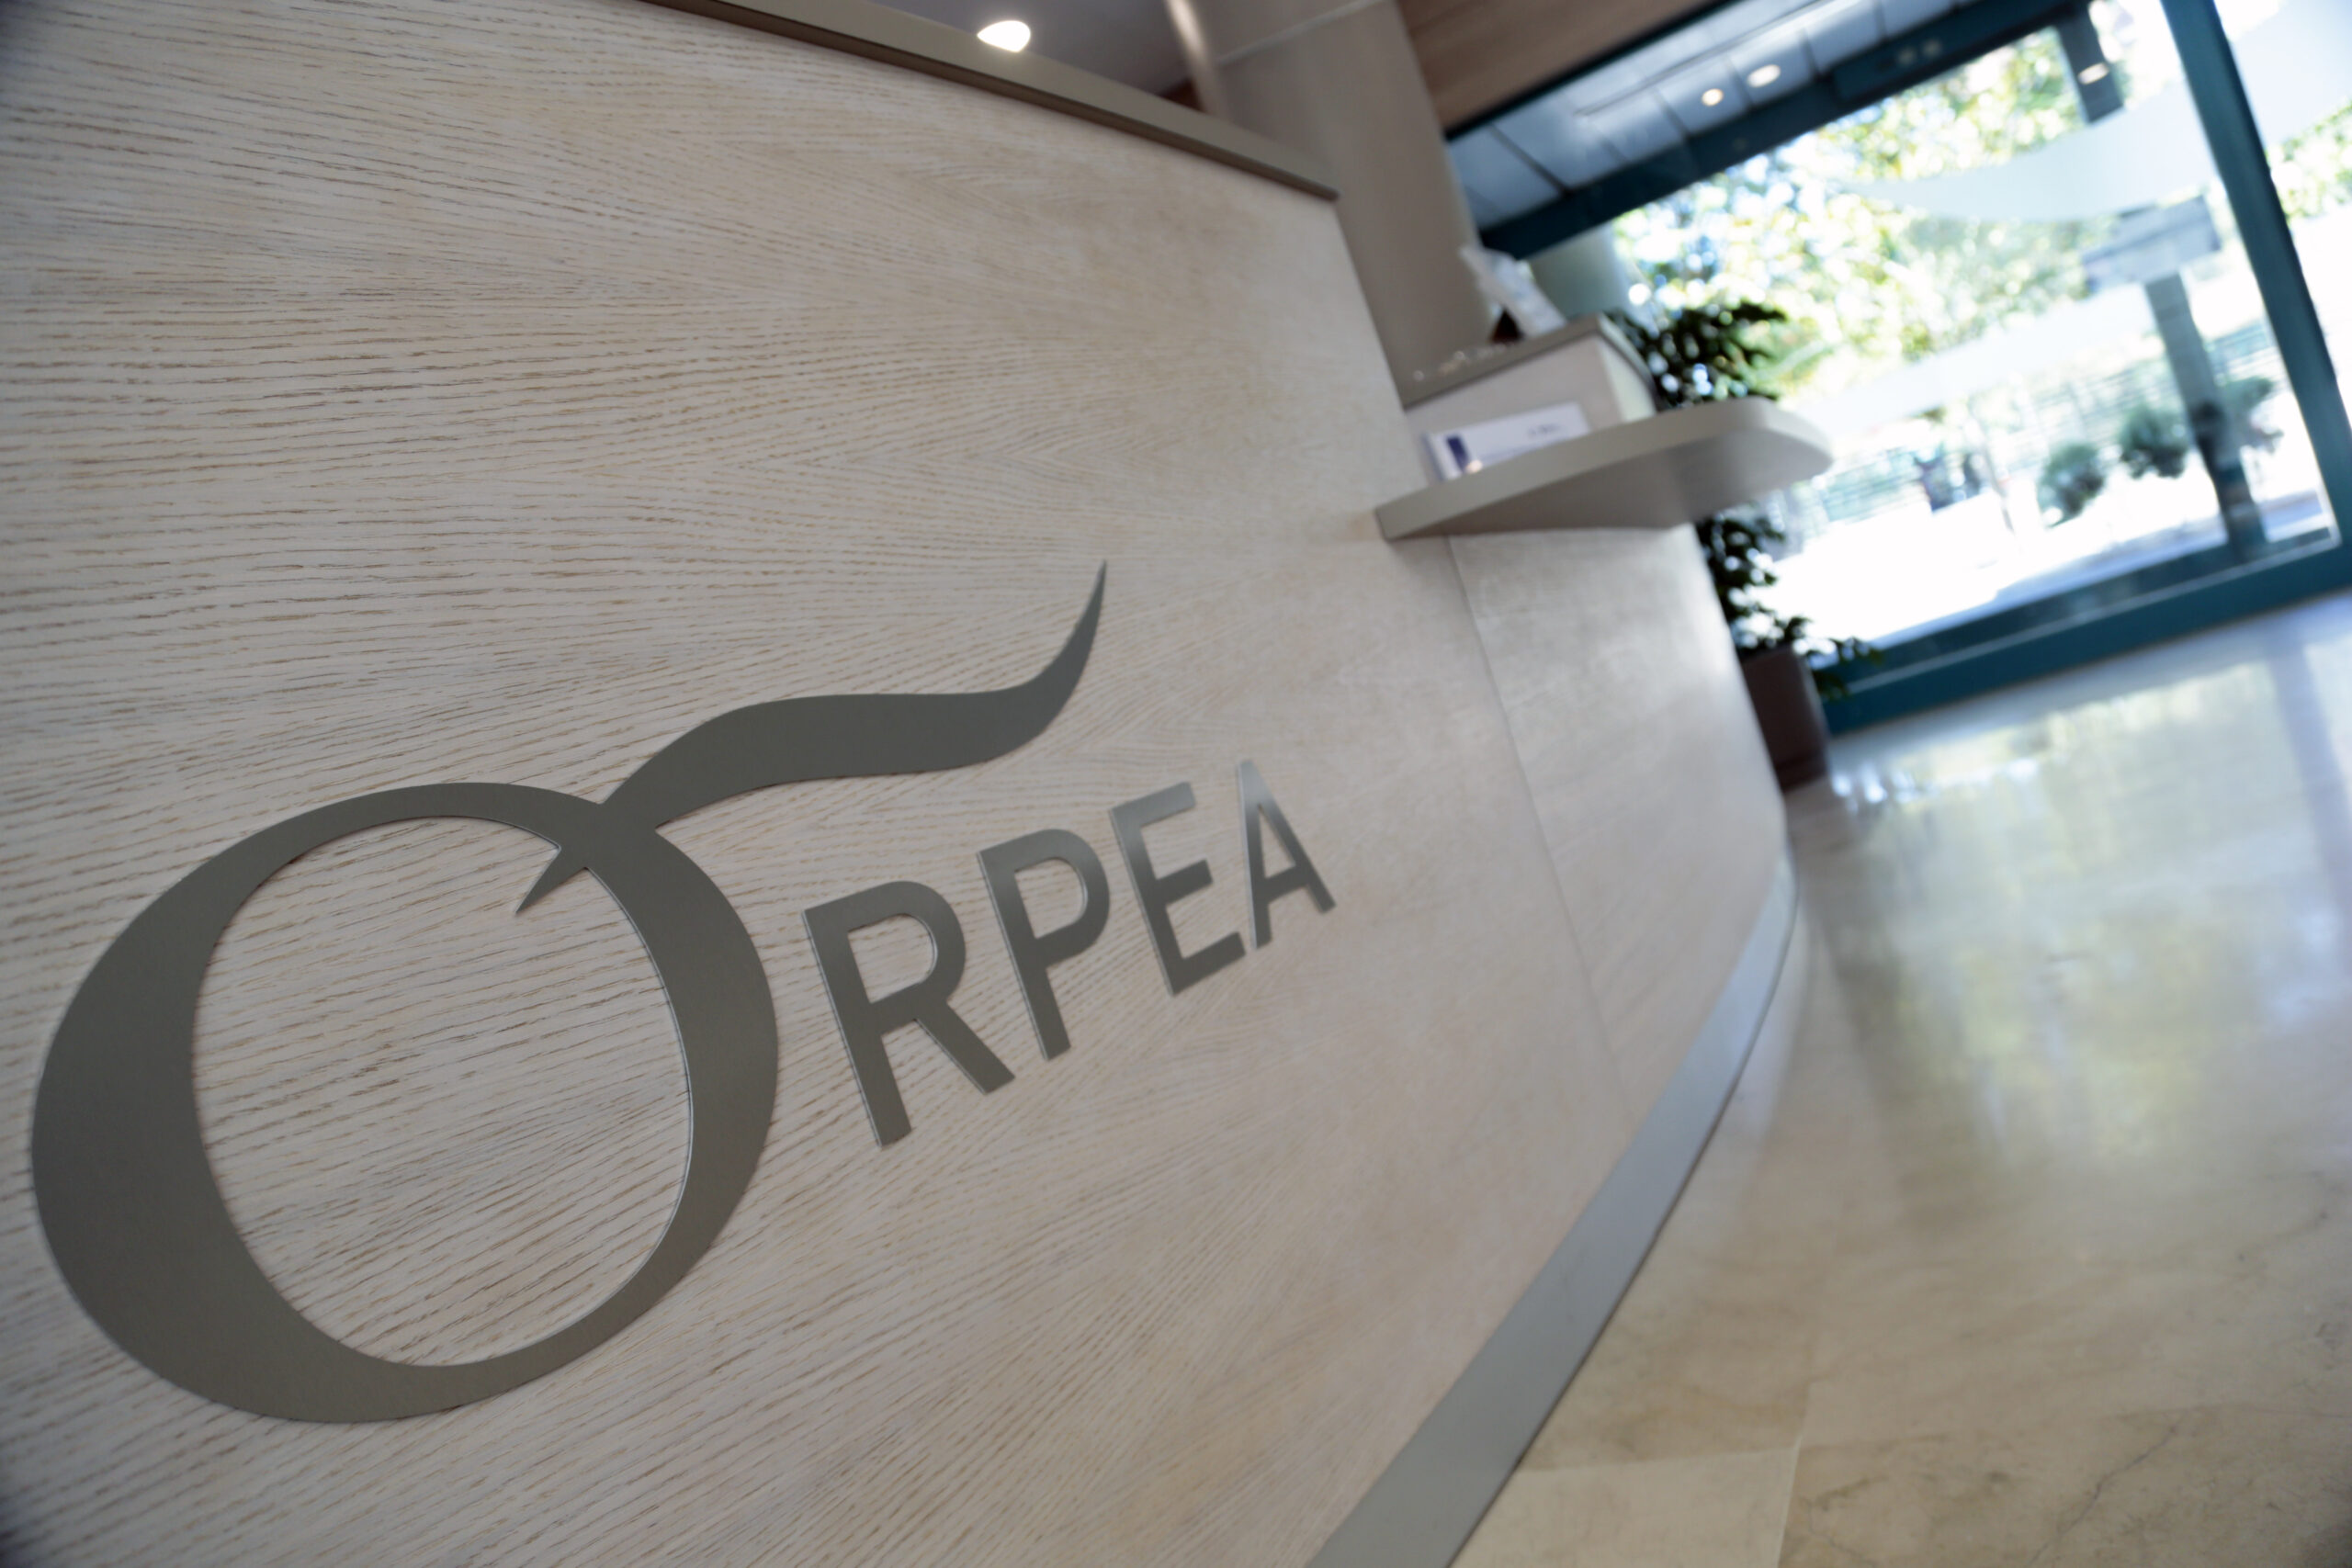 ORPEA adquiere Hestia Alliance y Sanitas Mayores